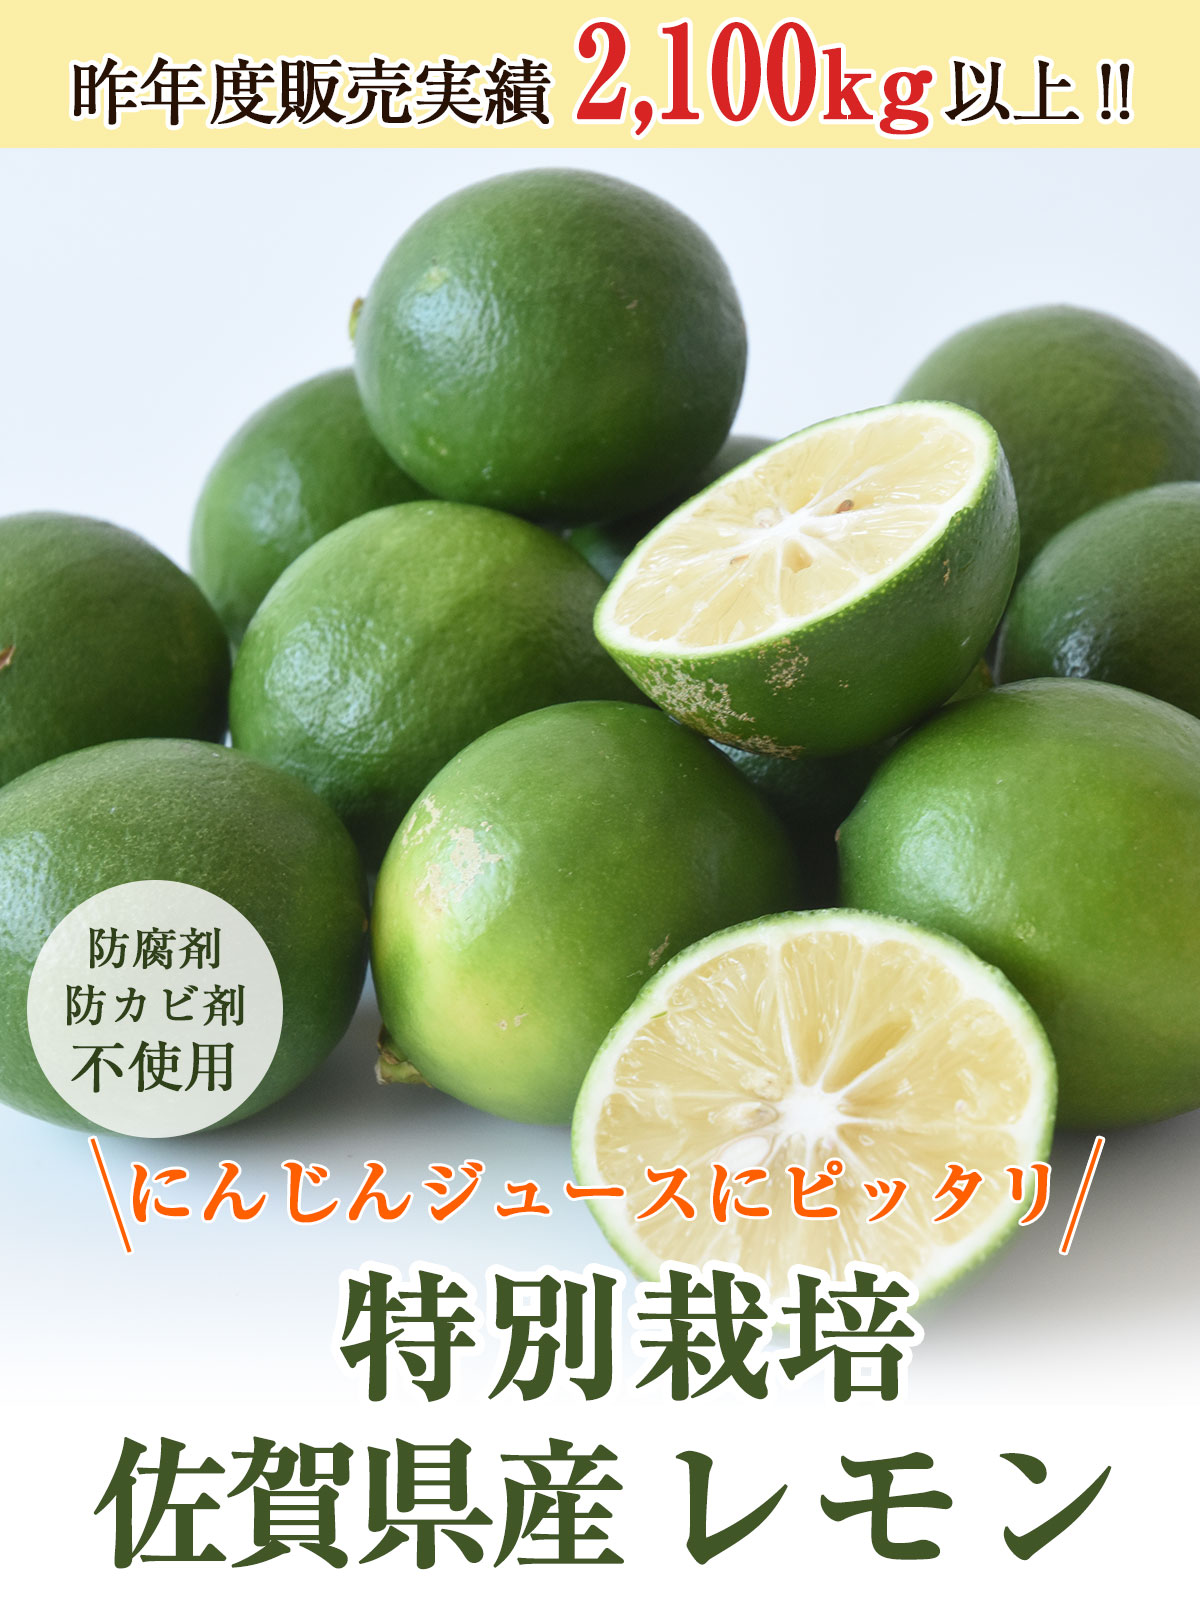 佐賀県産 レモン 1kg 国産 特別栽培農産物